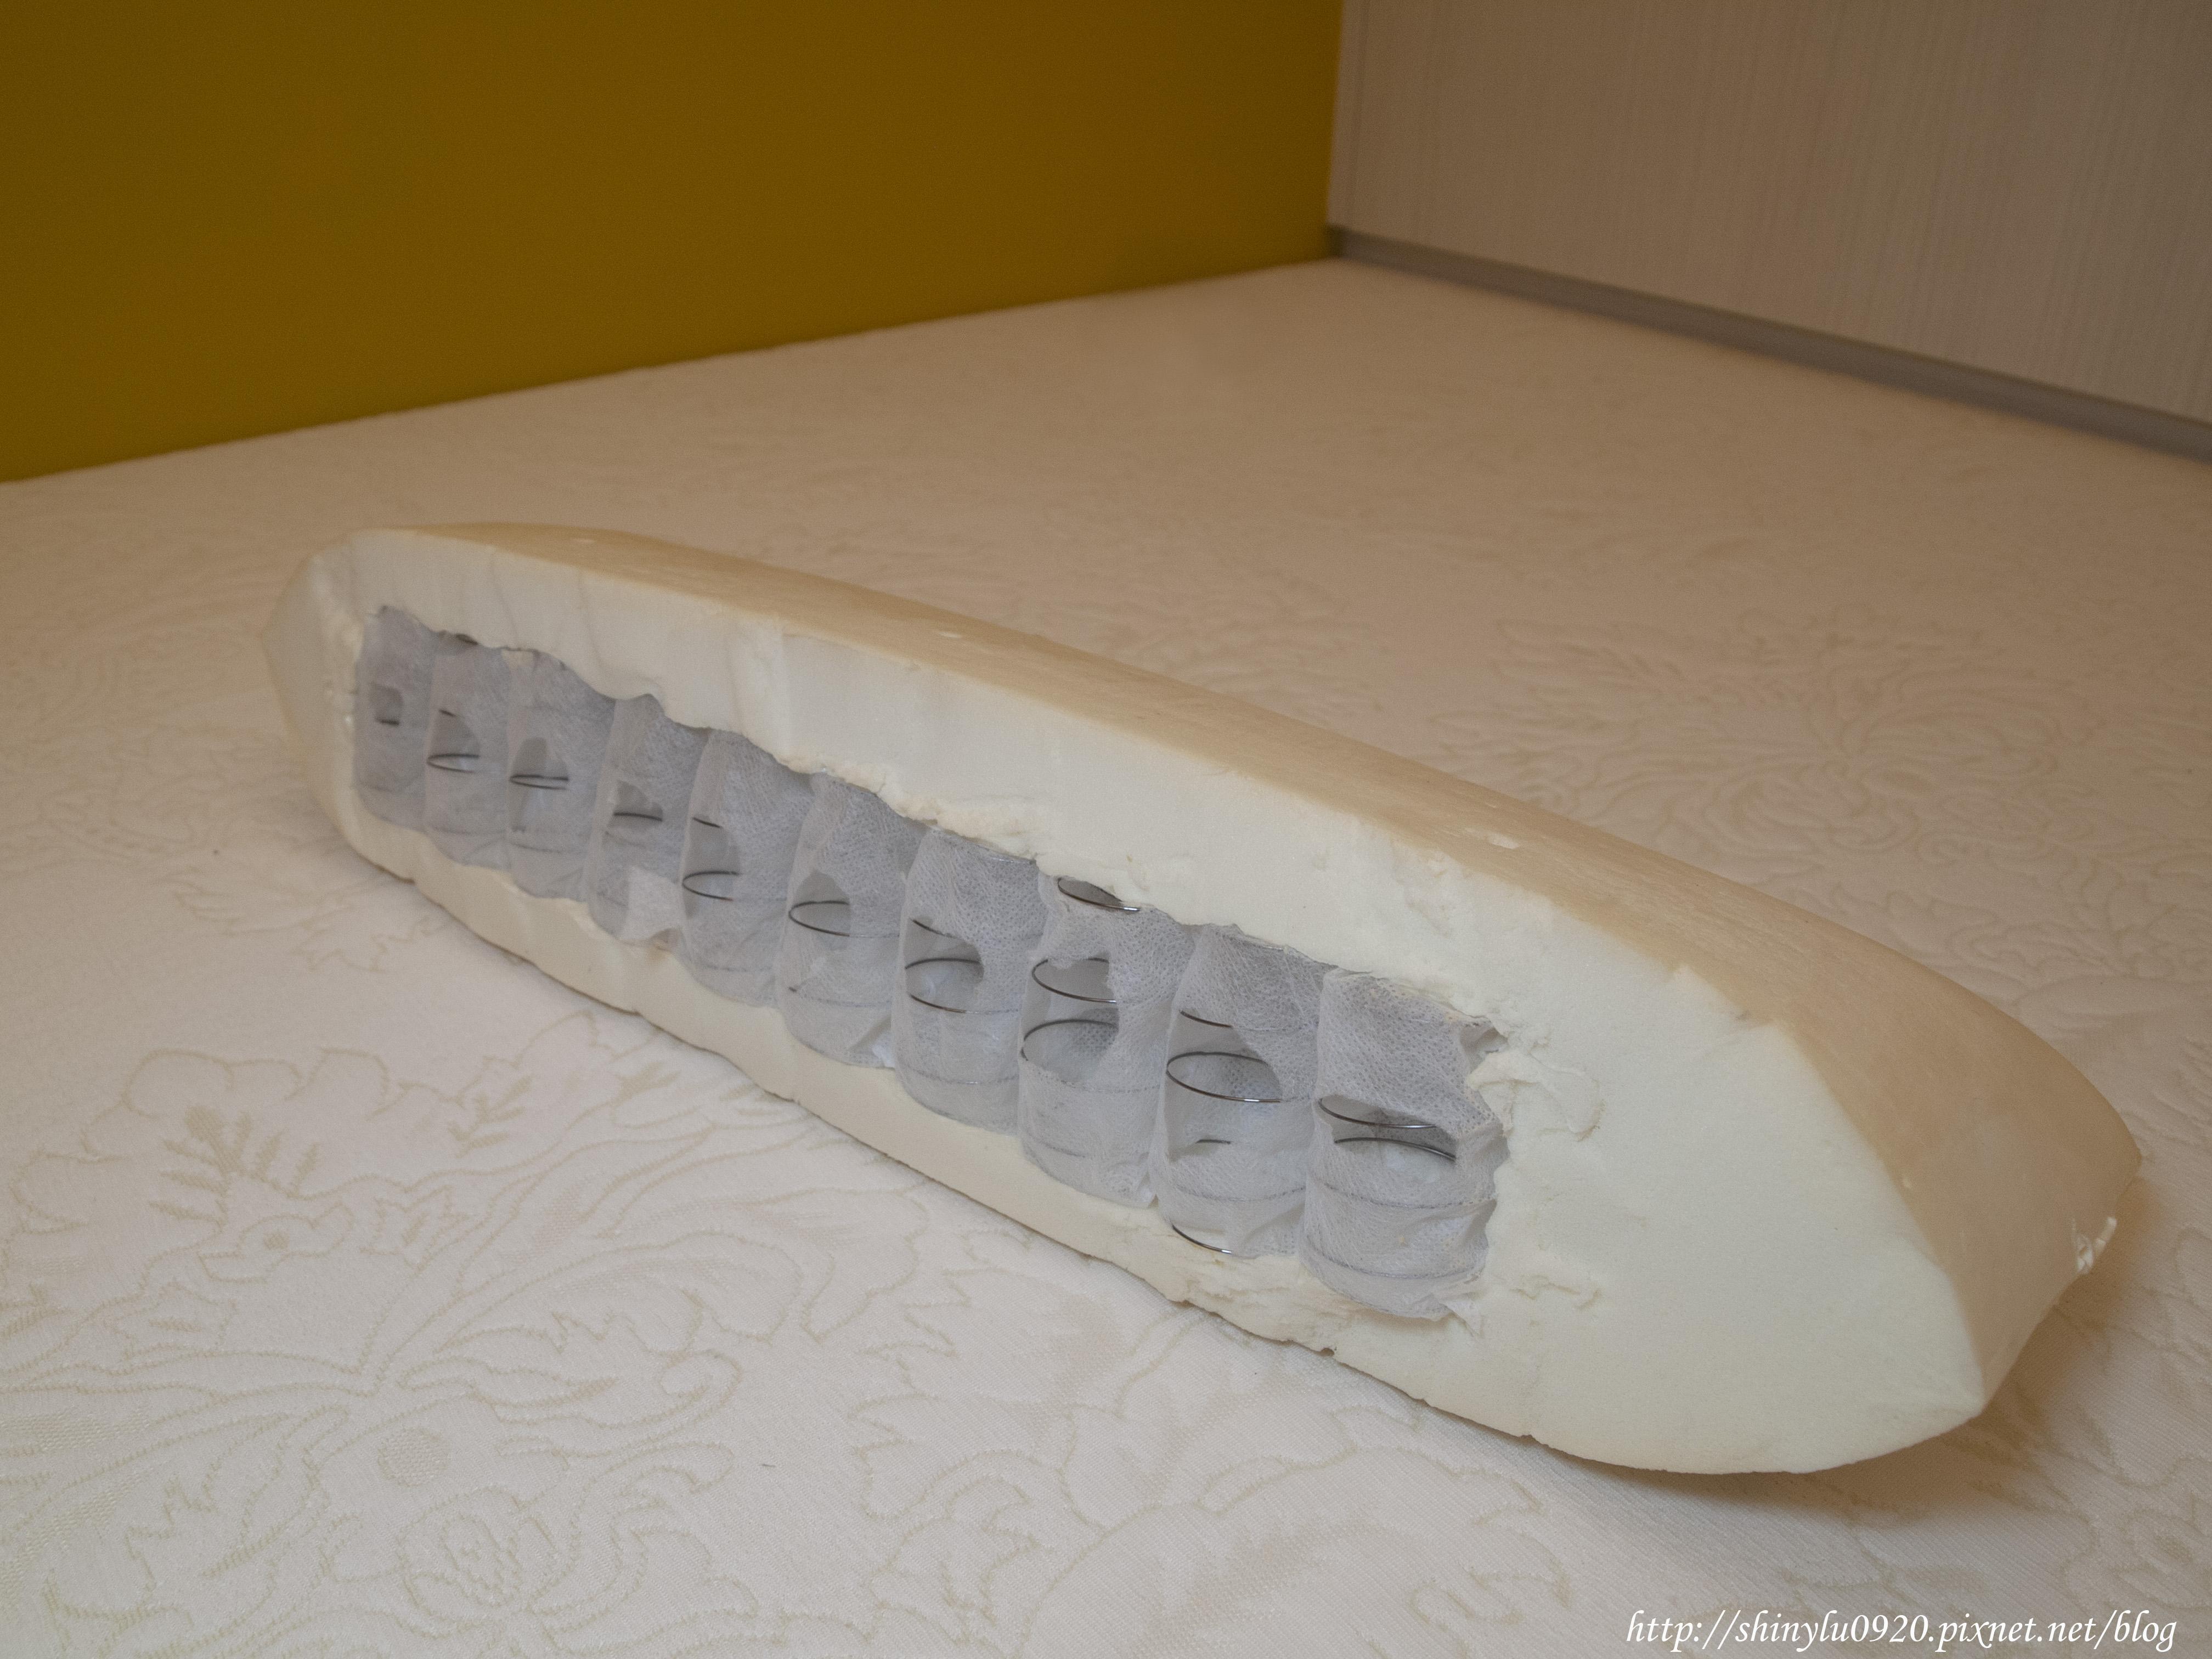 羽鄉寢具的獨立筒乳膠枕，是用一體成形的乳膠將獨立筒包覆起來，如此耗工繁鎖及專業技術，羽鄉寢具可是有申請專利的哦 